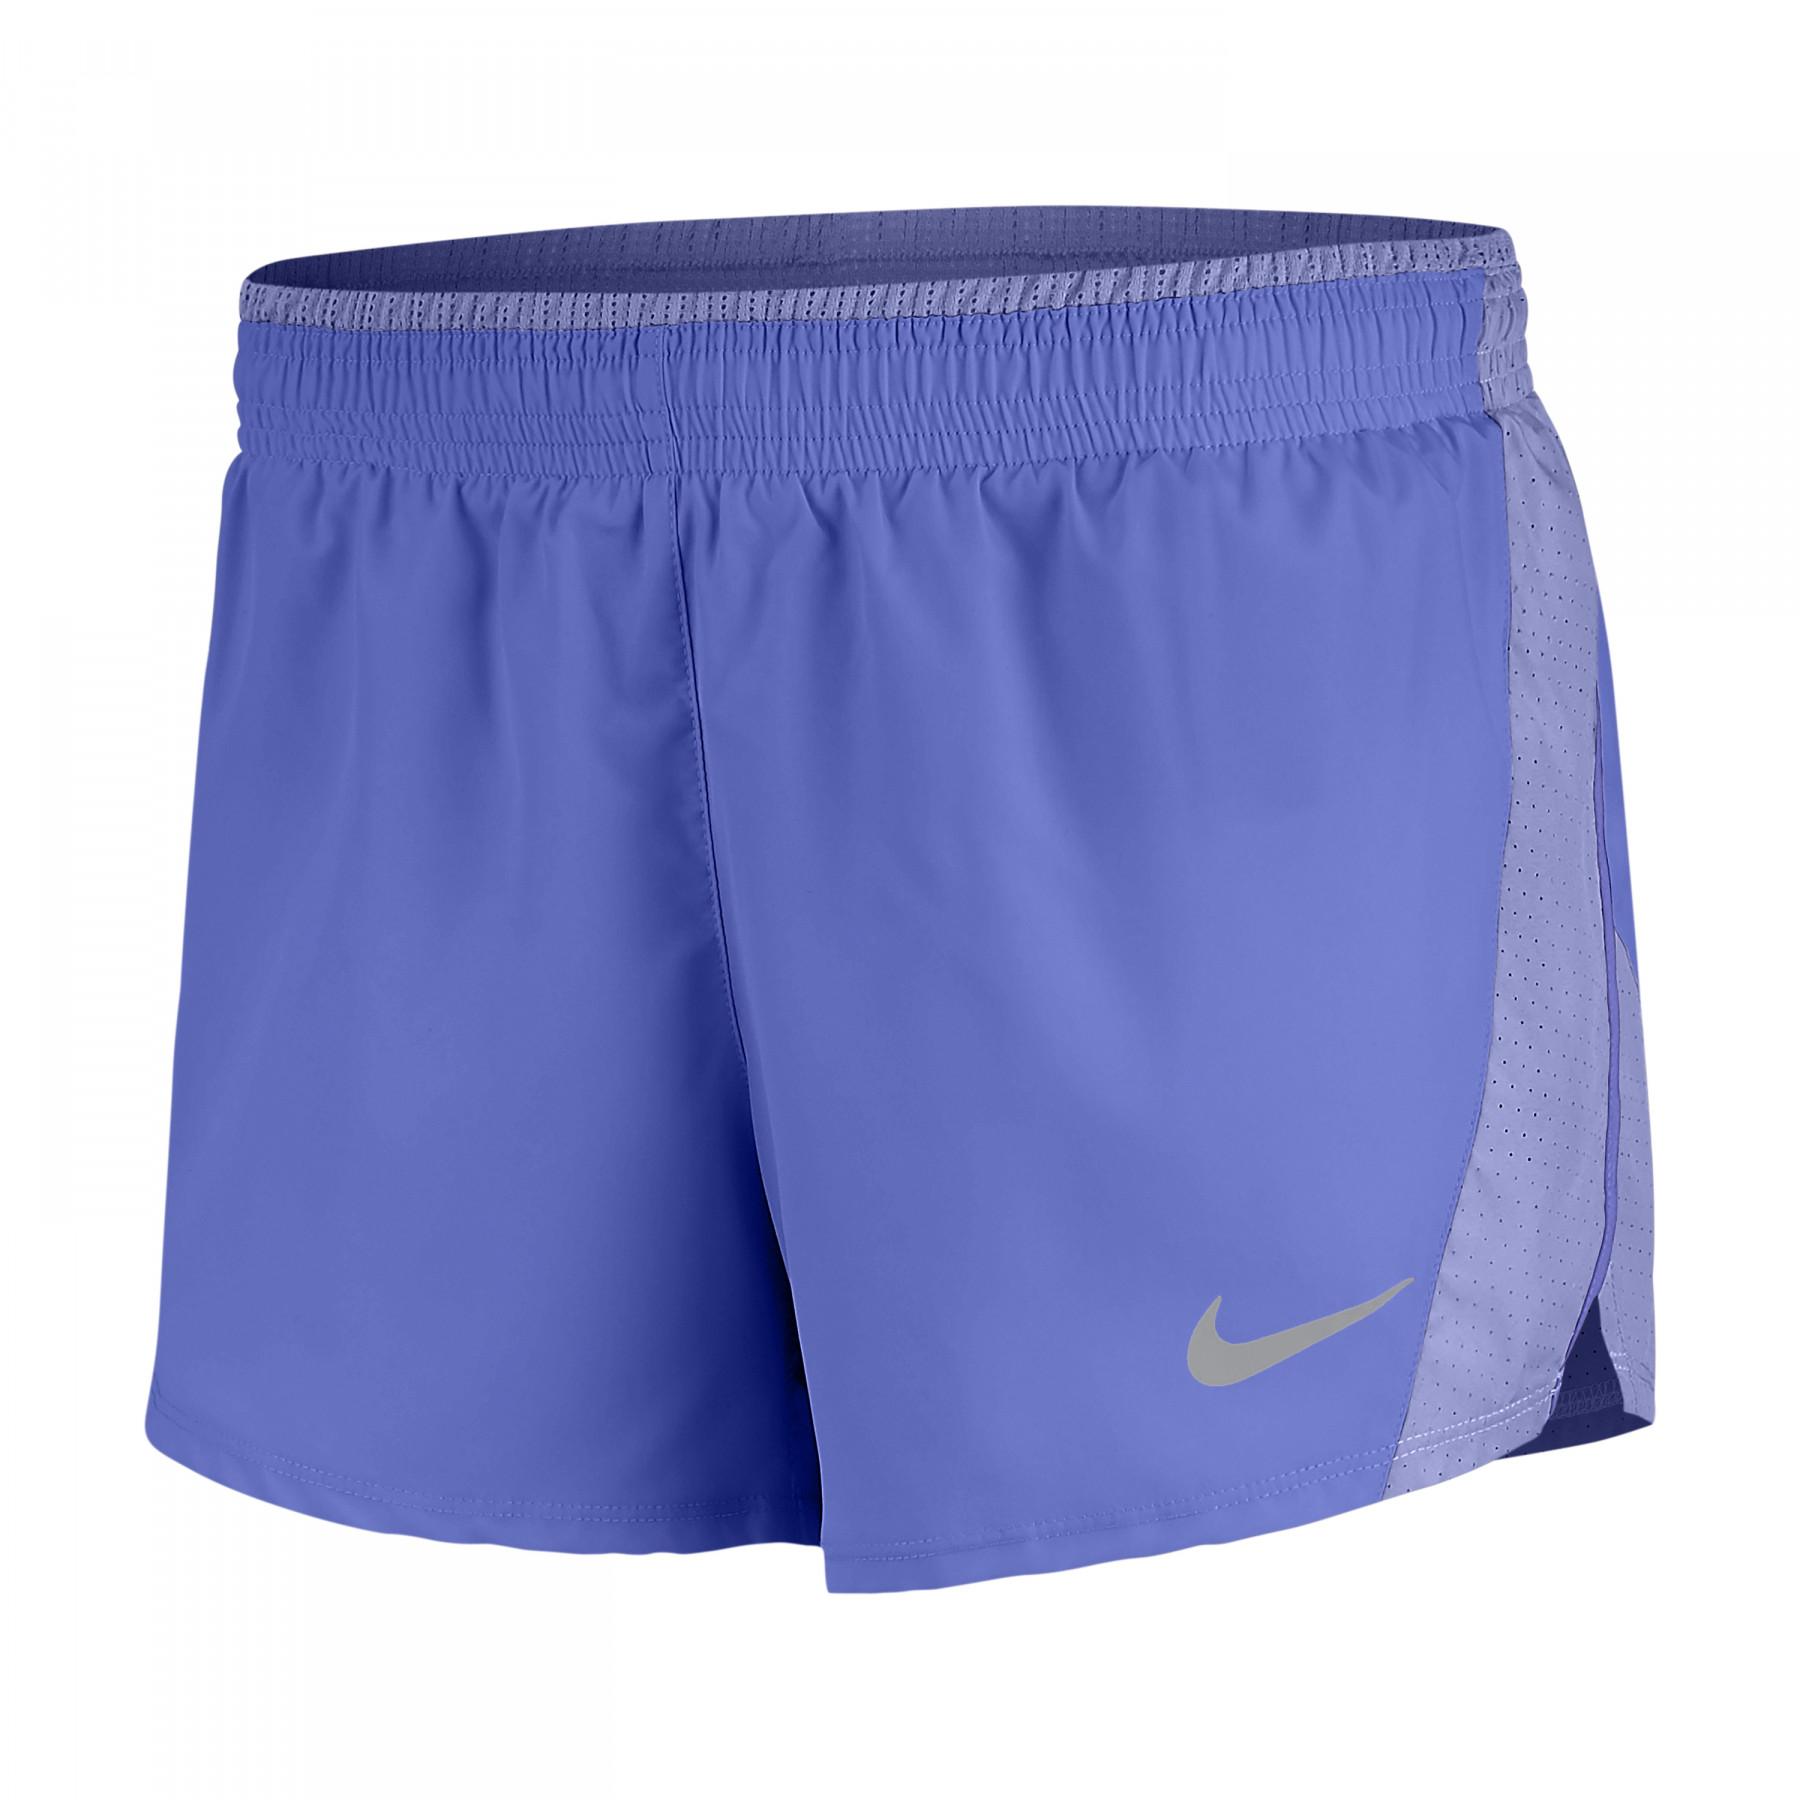 Women's shorts Nike Basic